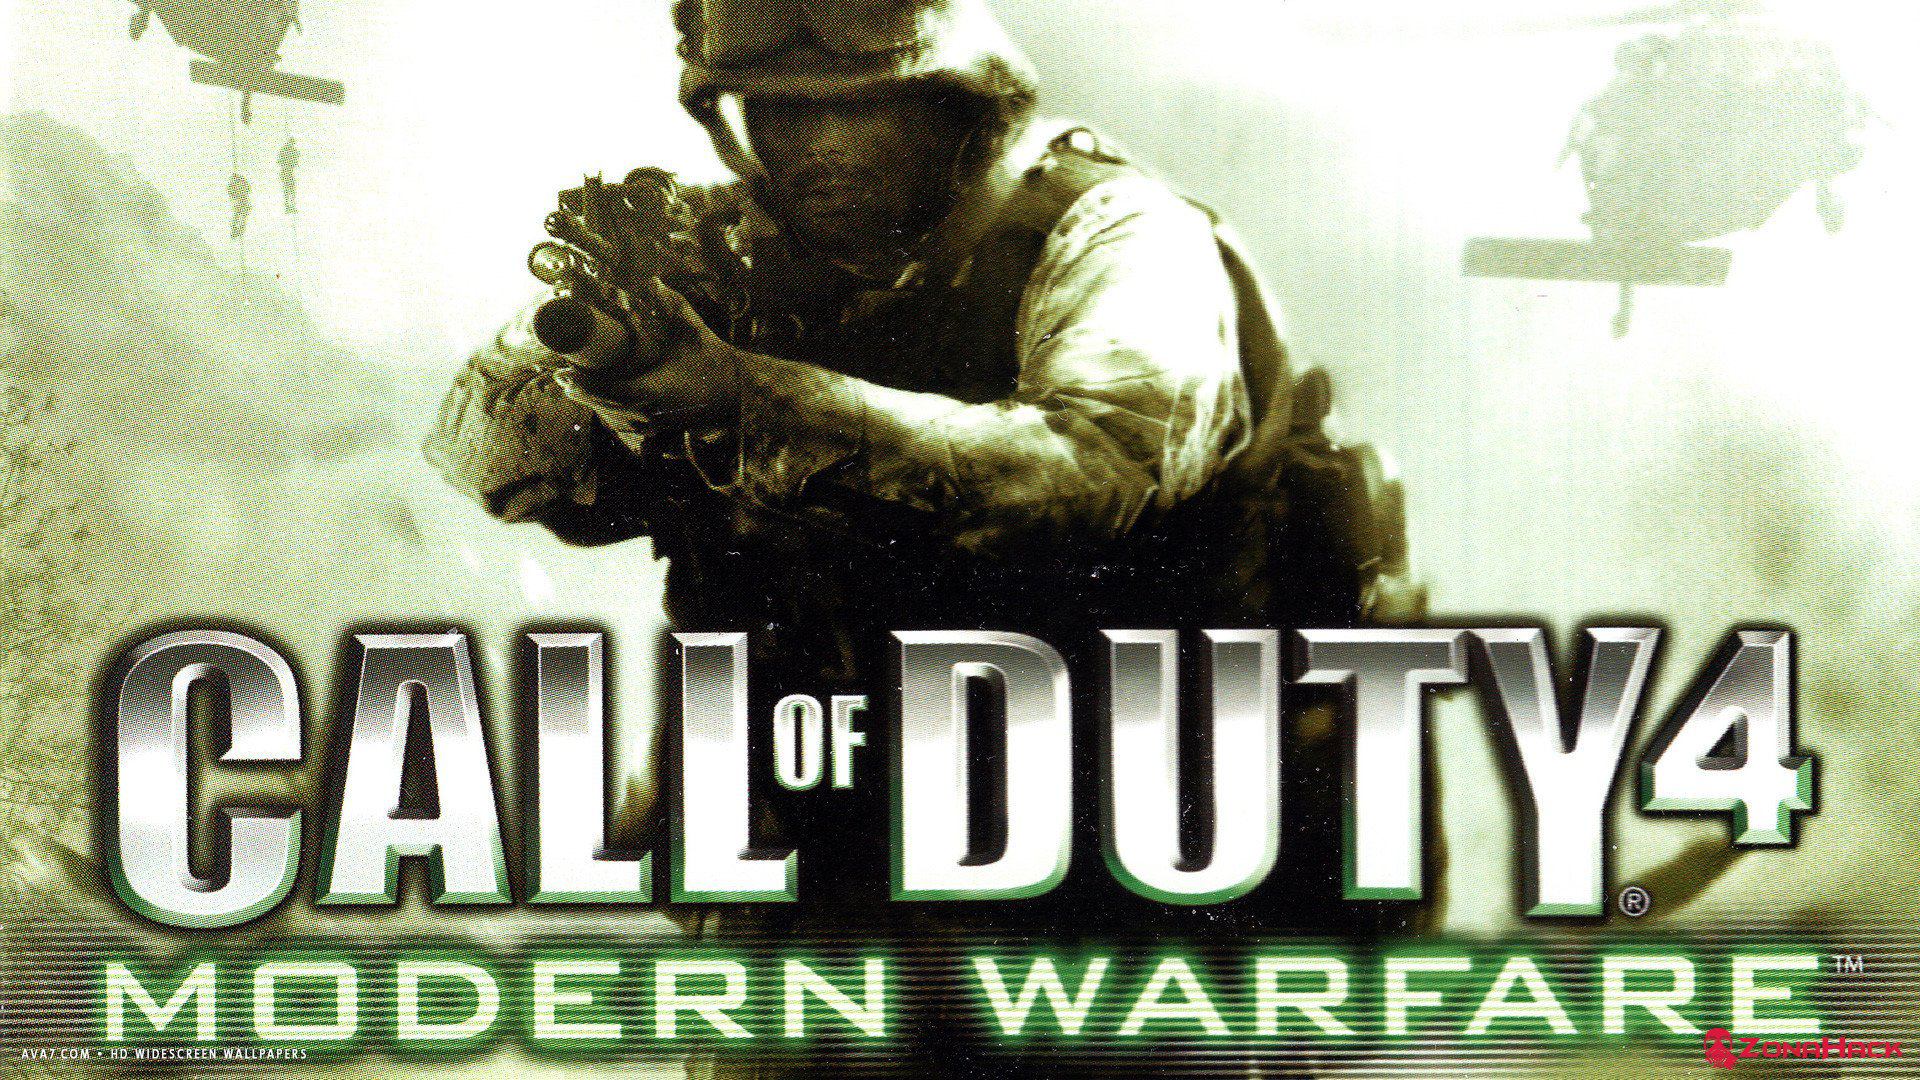 Скачать игру Call of Duty 4 Modern Warfare браузером через Яндекс Диск